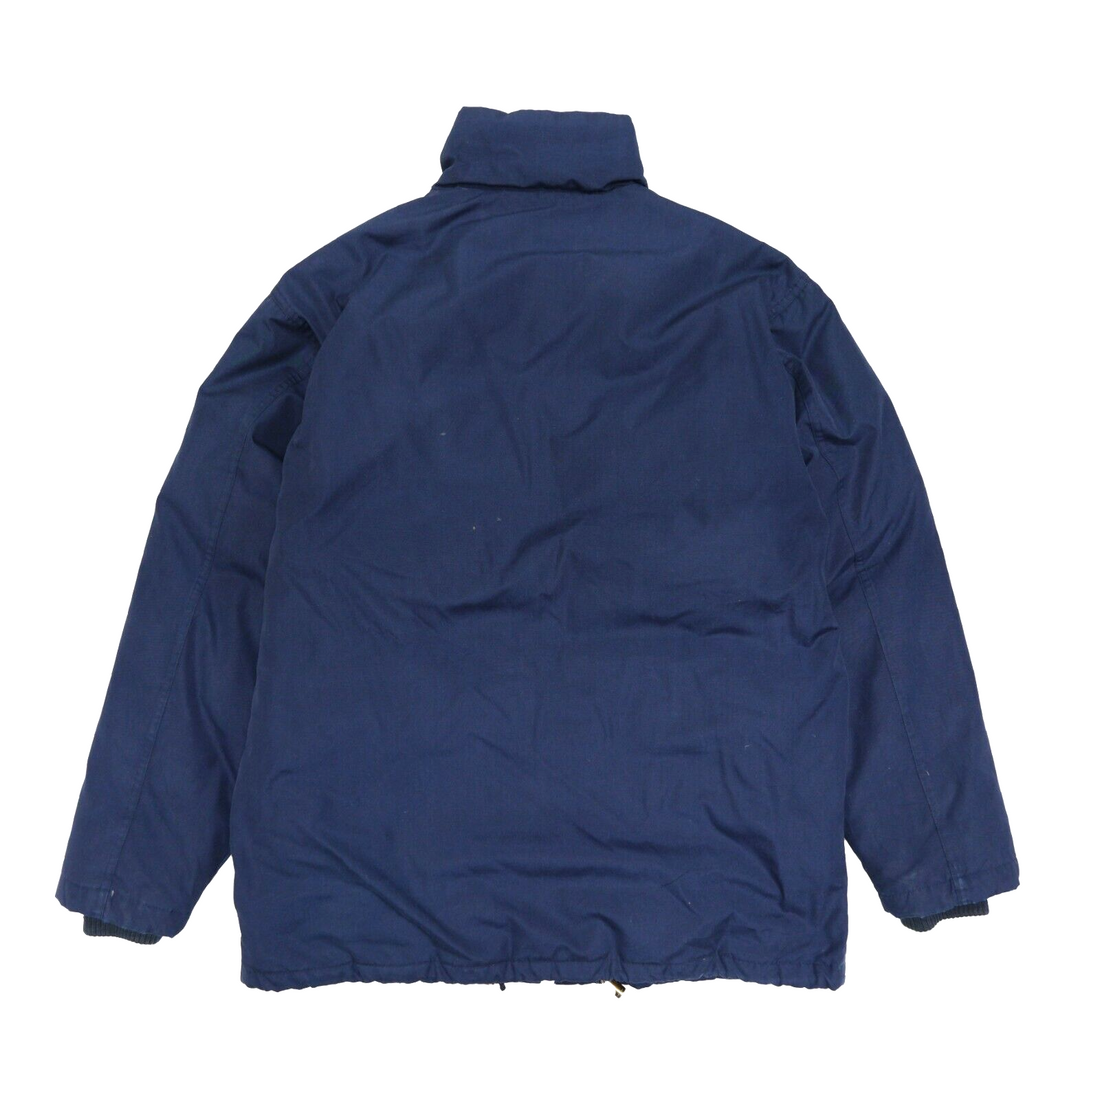 Vintage Eddie Bauer Puffer Jacket Size Medium Blue Goose Down Insulated